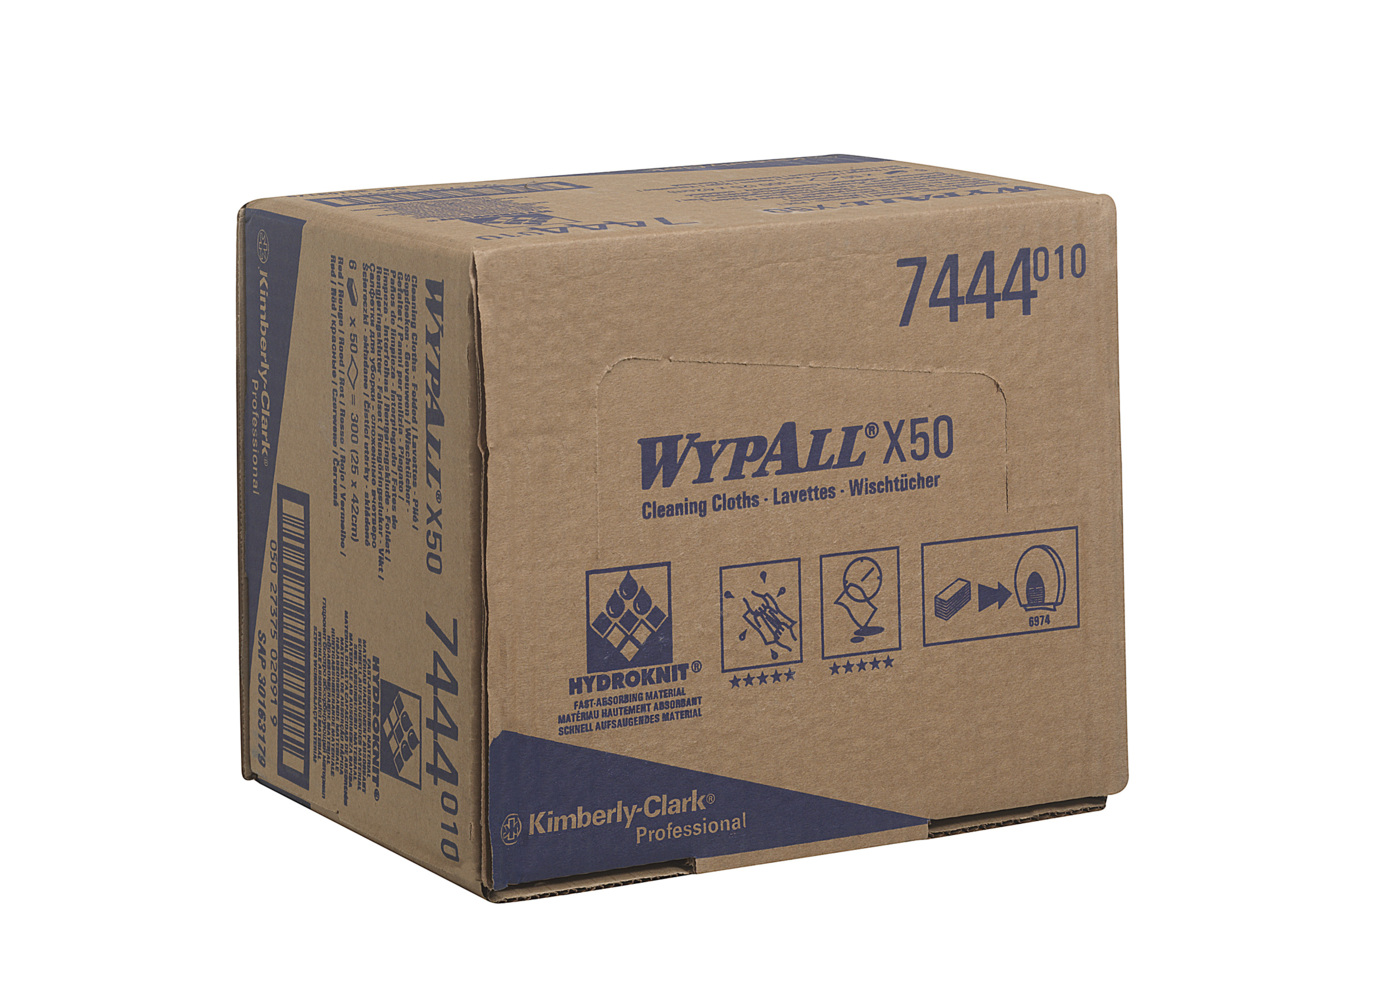 WypAll® X50 Farbcodierte Reinigungstücher 7444 Rot 6 Packungen x 50 Farbcodierte Wischtücher mit Interfold-Faltung (insges. 300) - 7444